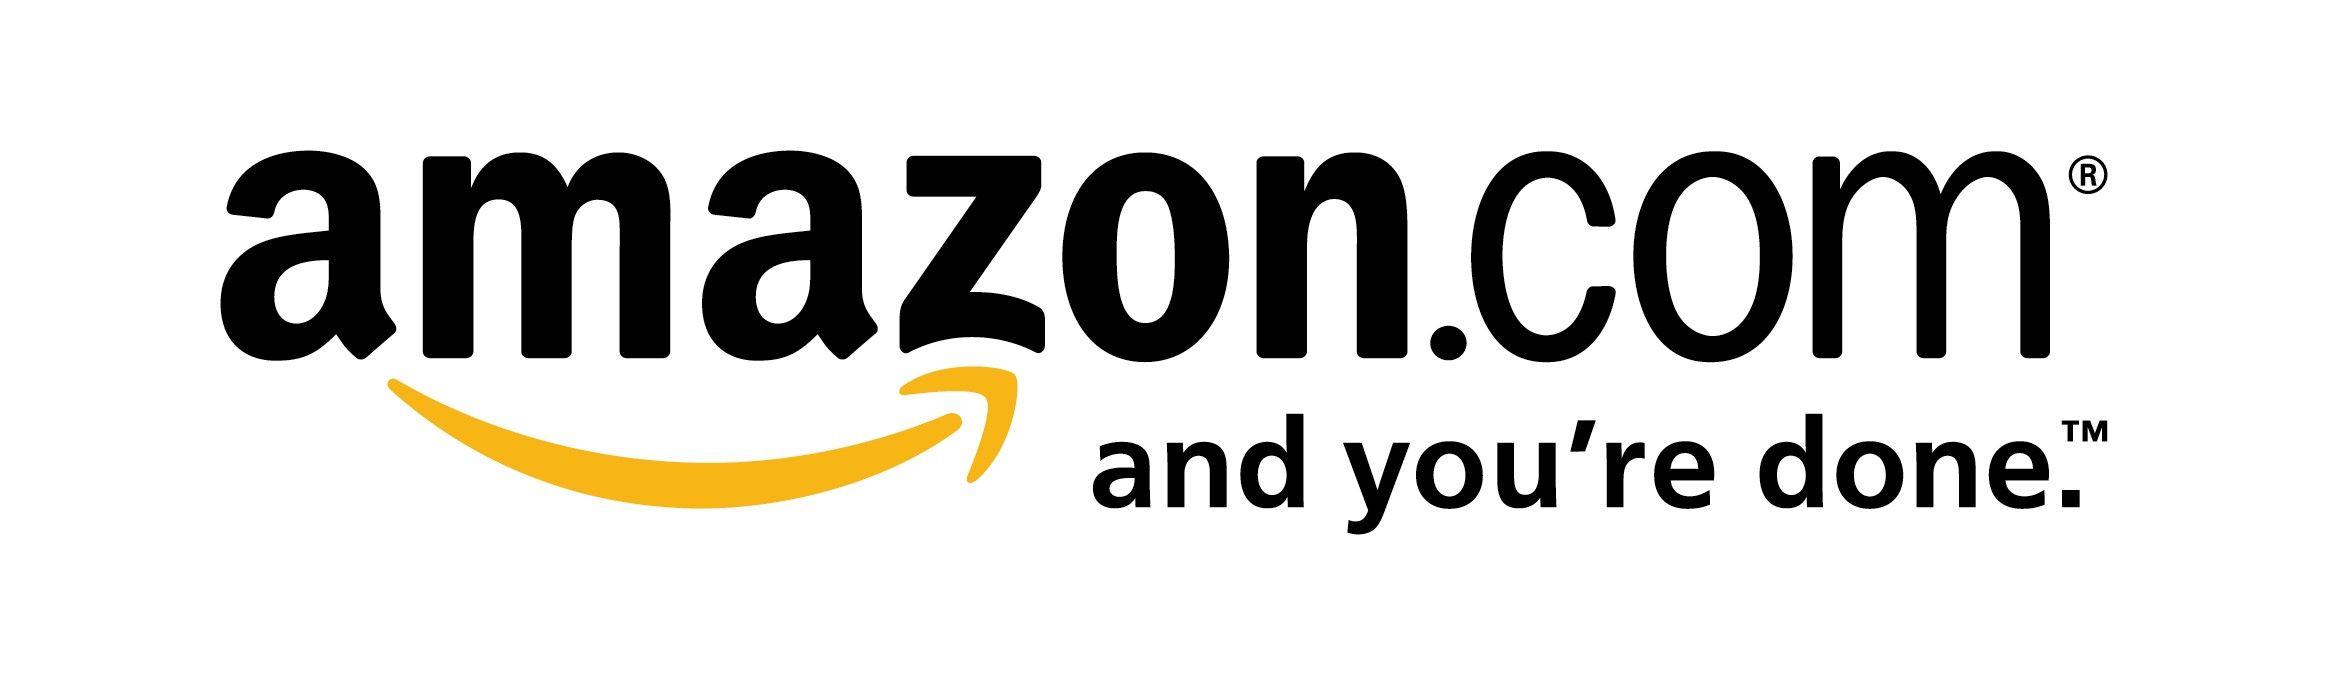 Amazon Old Logo - Amazon is 20 Years Old